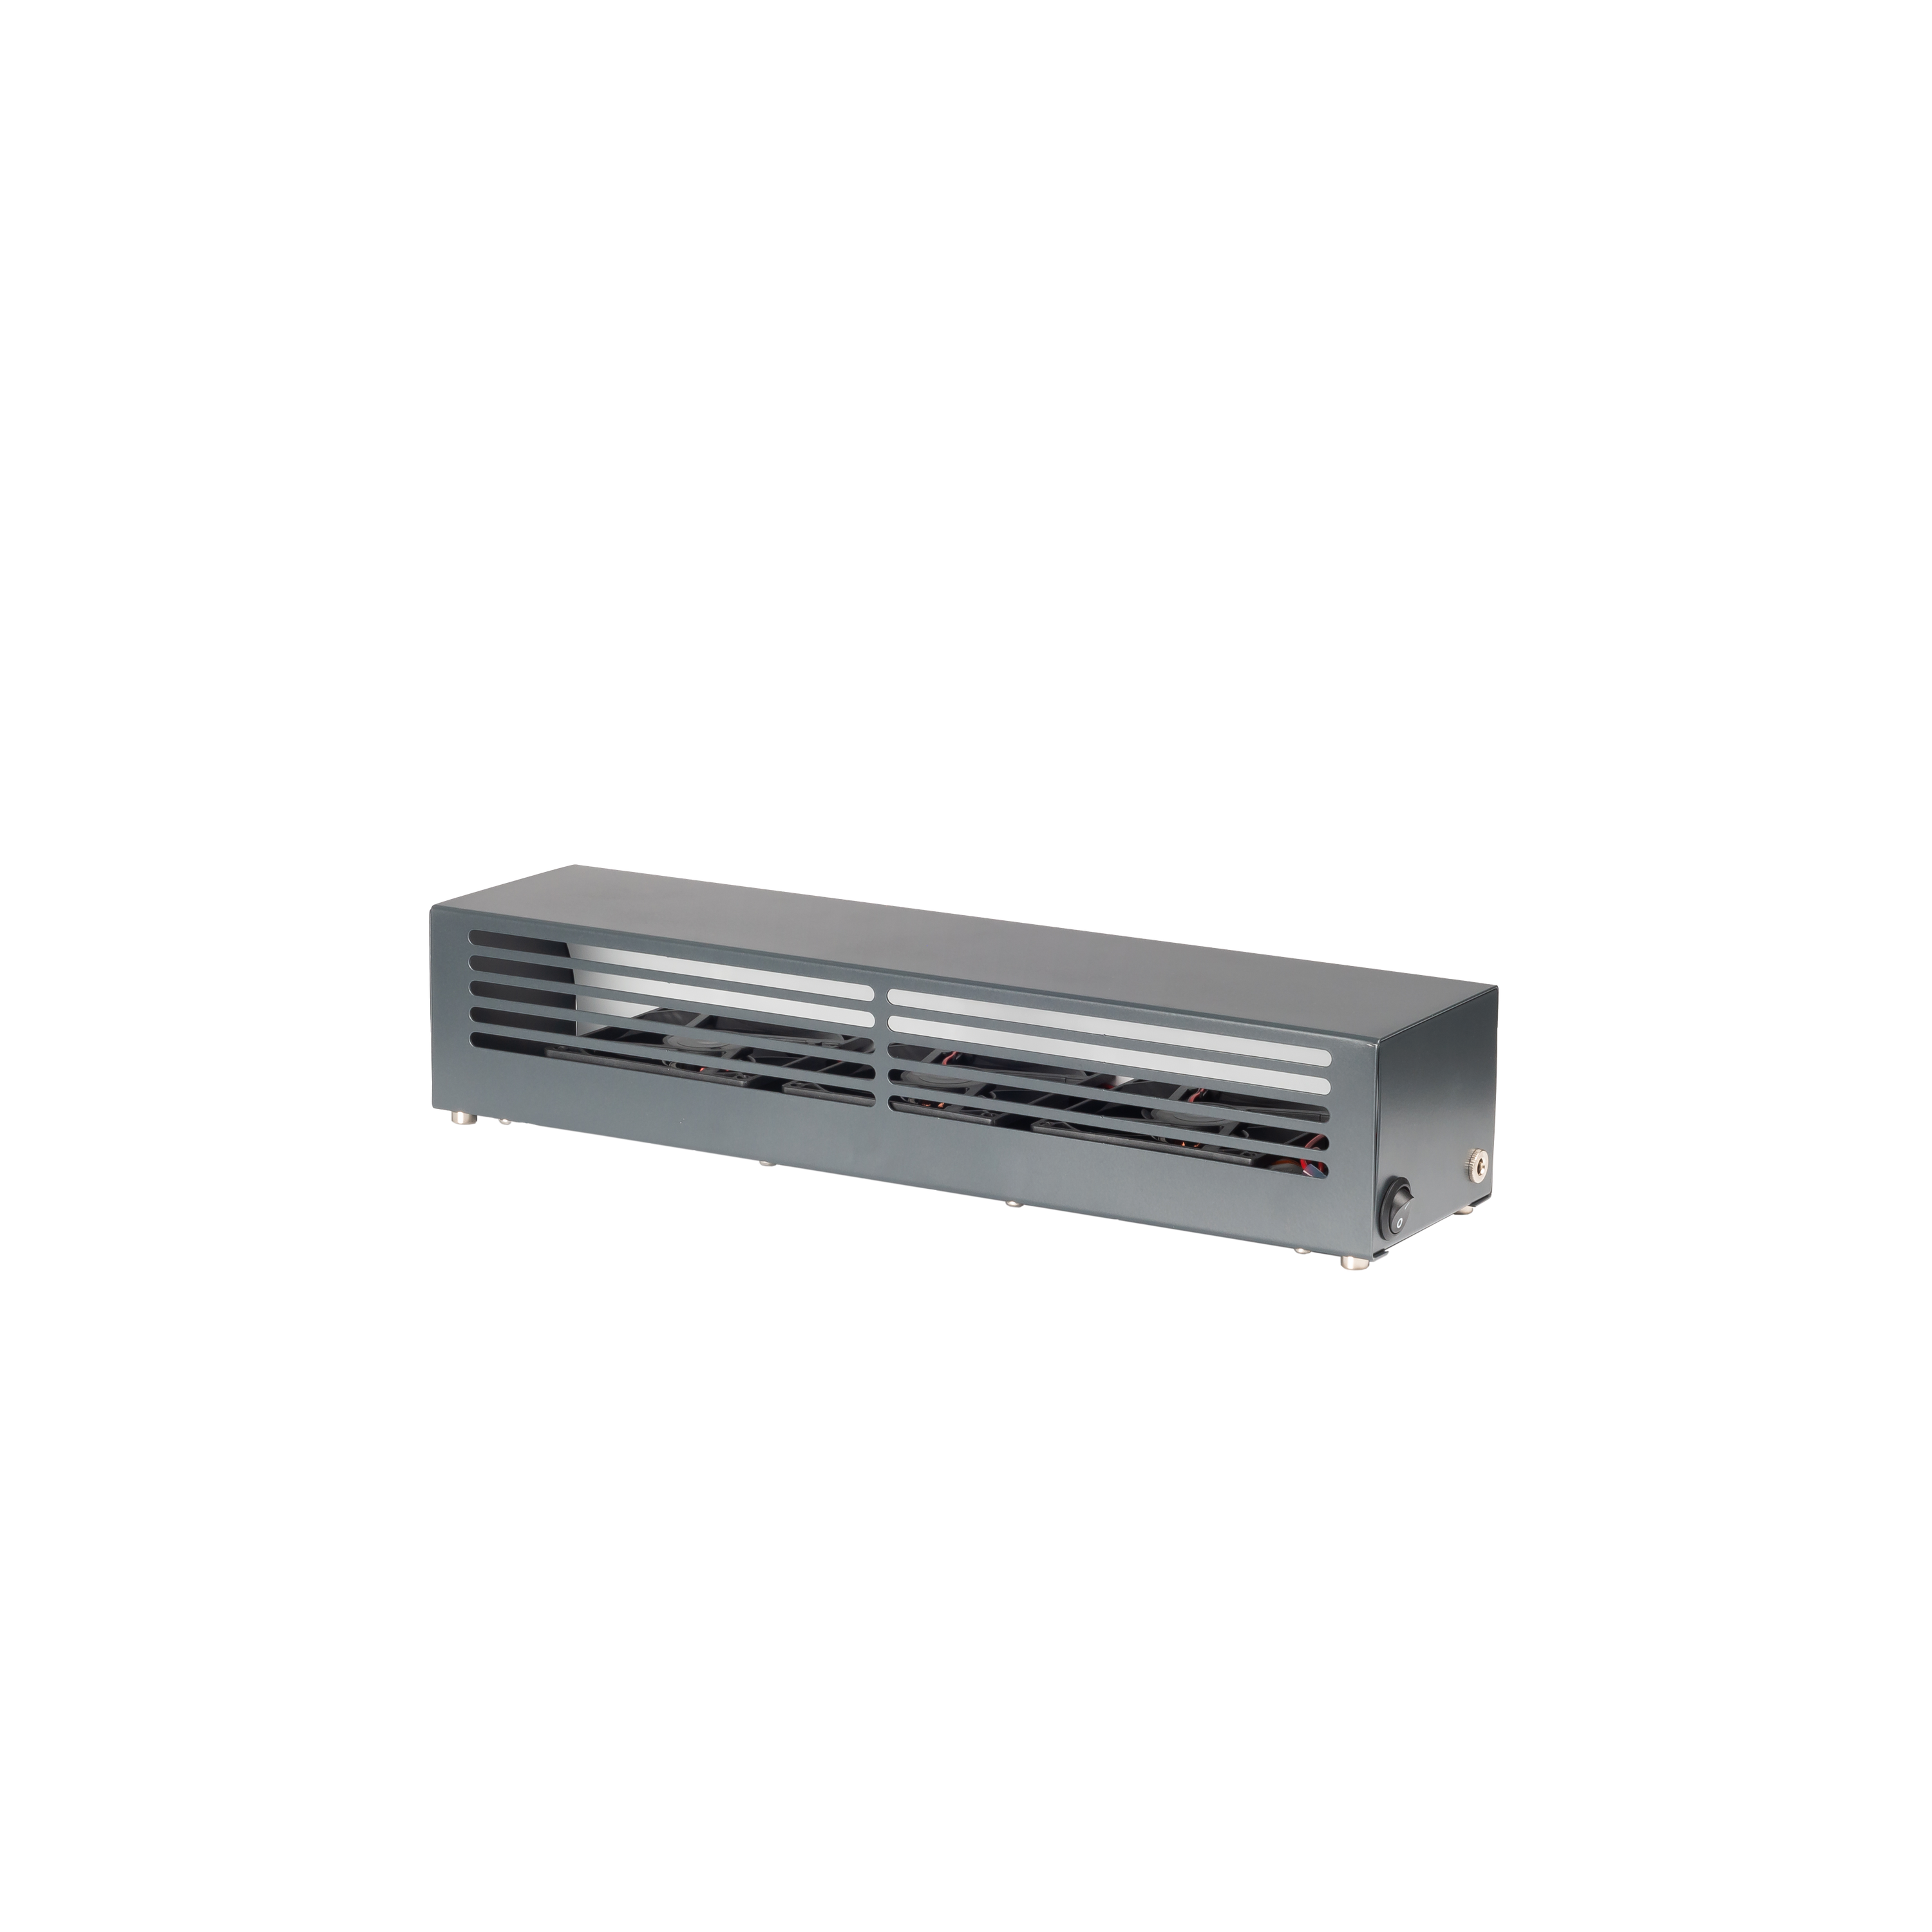 Lumair 30 Heizluftverstärker / Ventilator - für Raumgrösse bis 20 m2 - Passend für alle gängigen Heizkörper Made in Germany